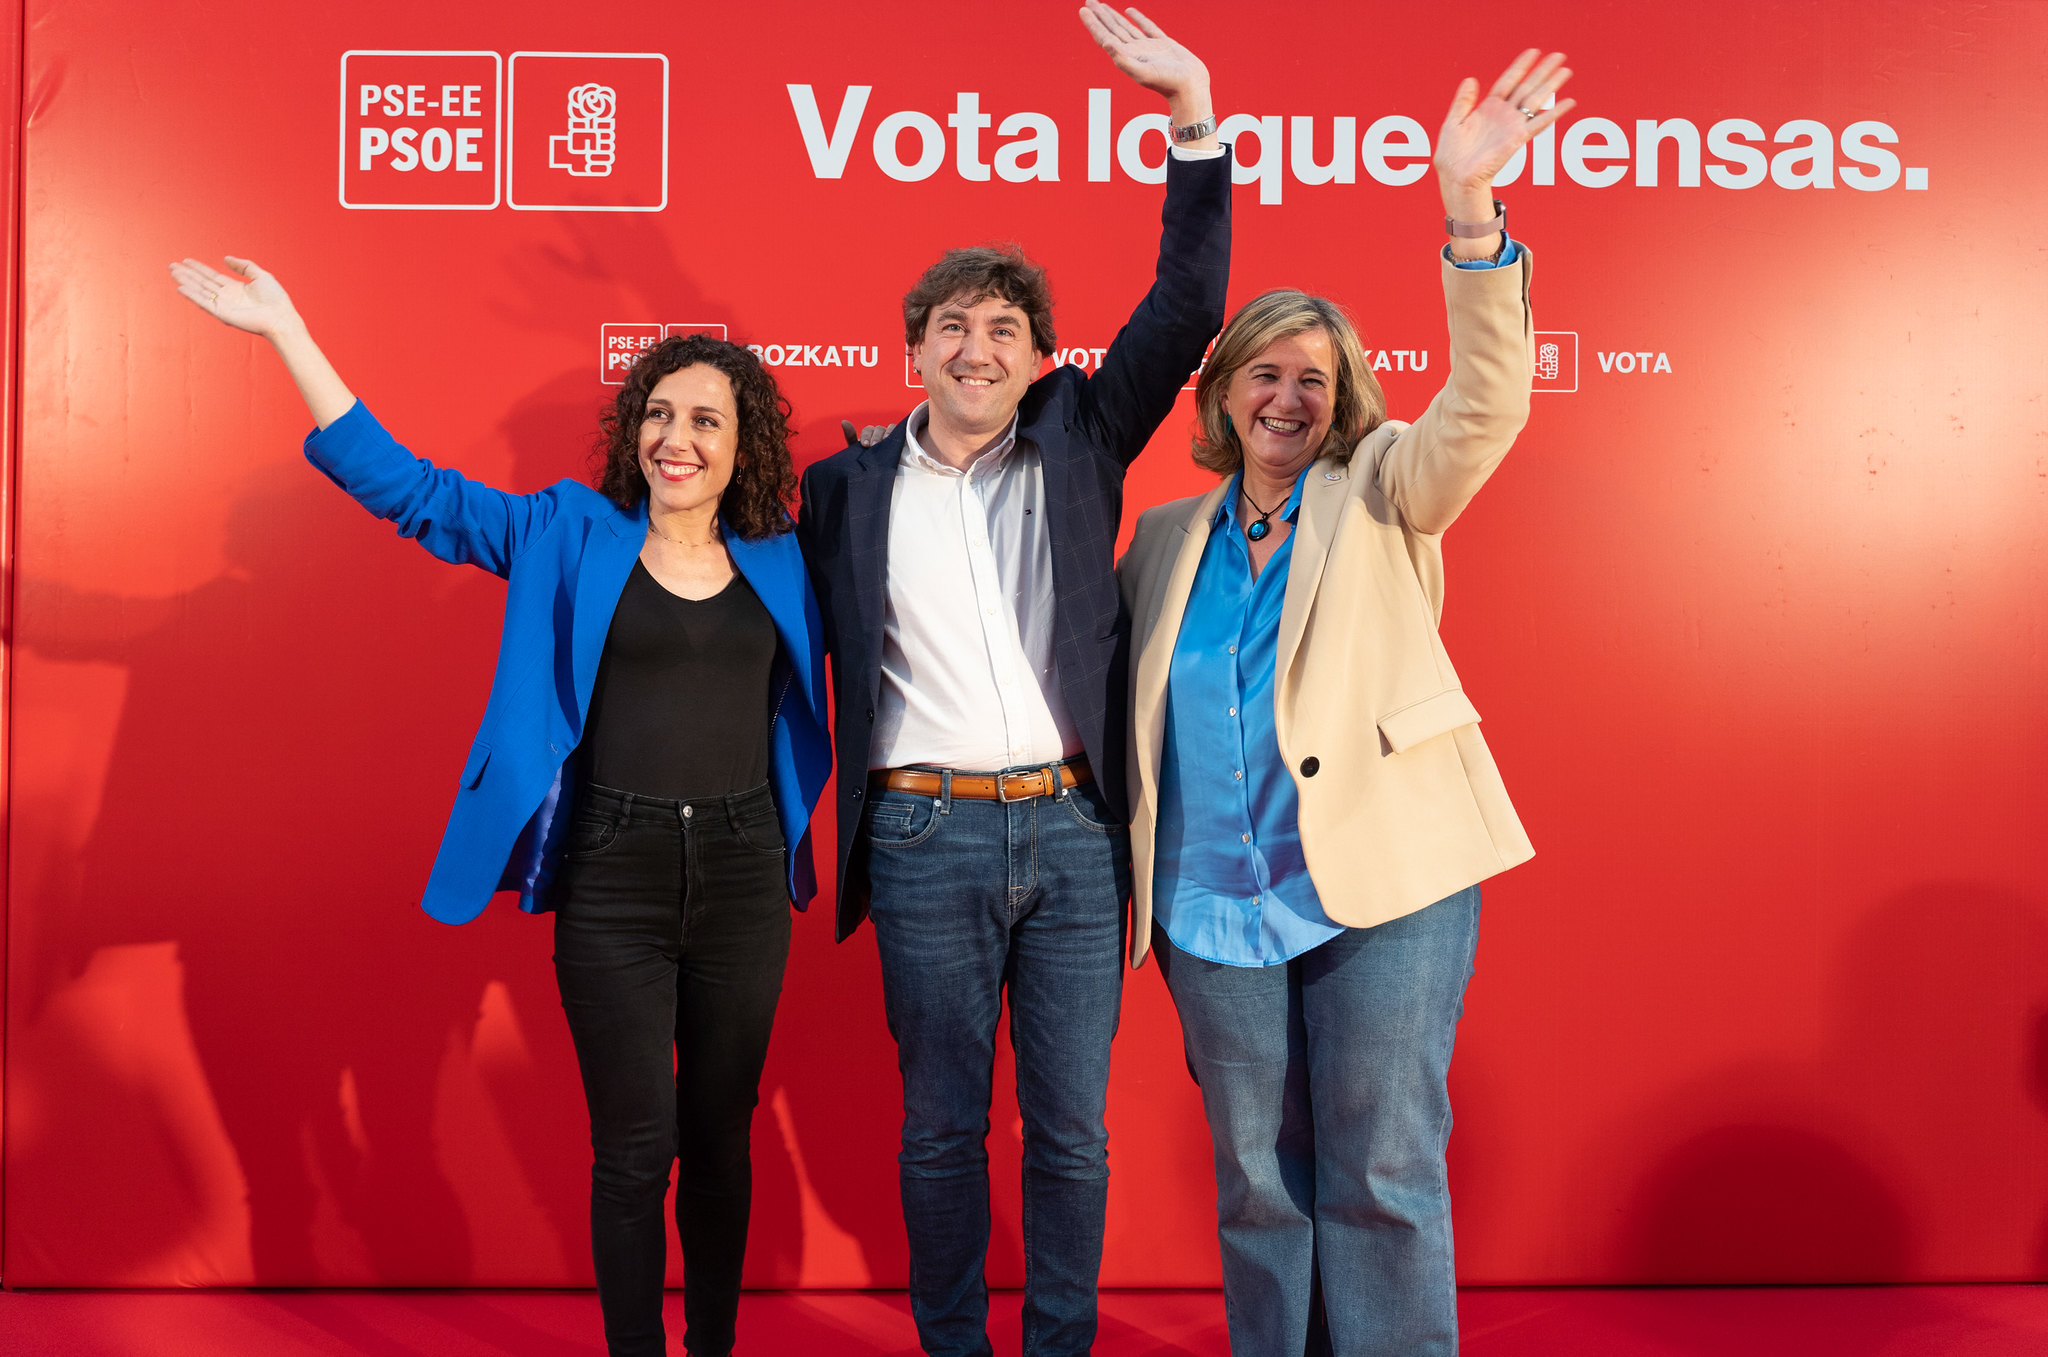 Acto político en Bilbao, con Nora Abete, Teresa Laespada y Eneko Andueza